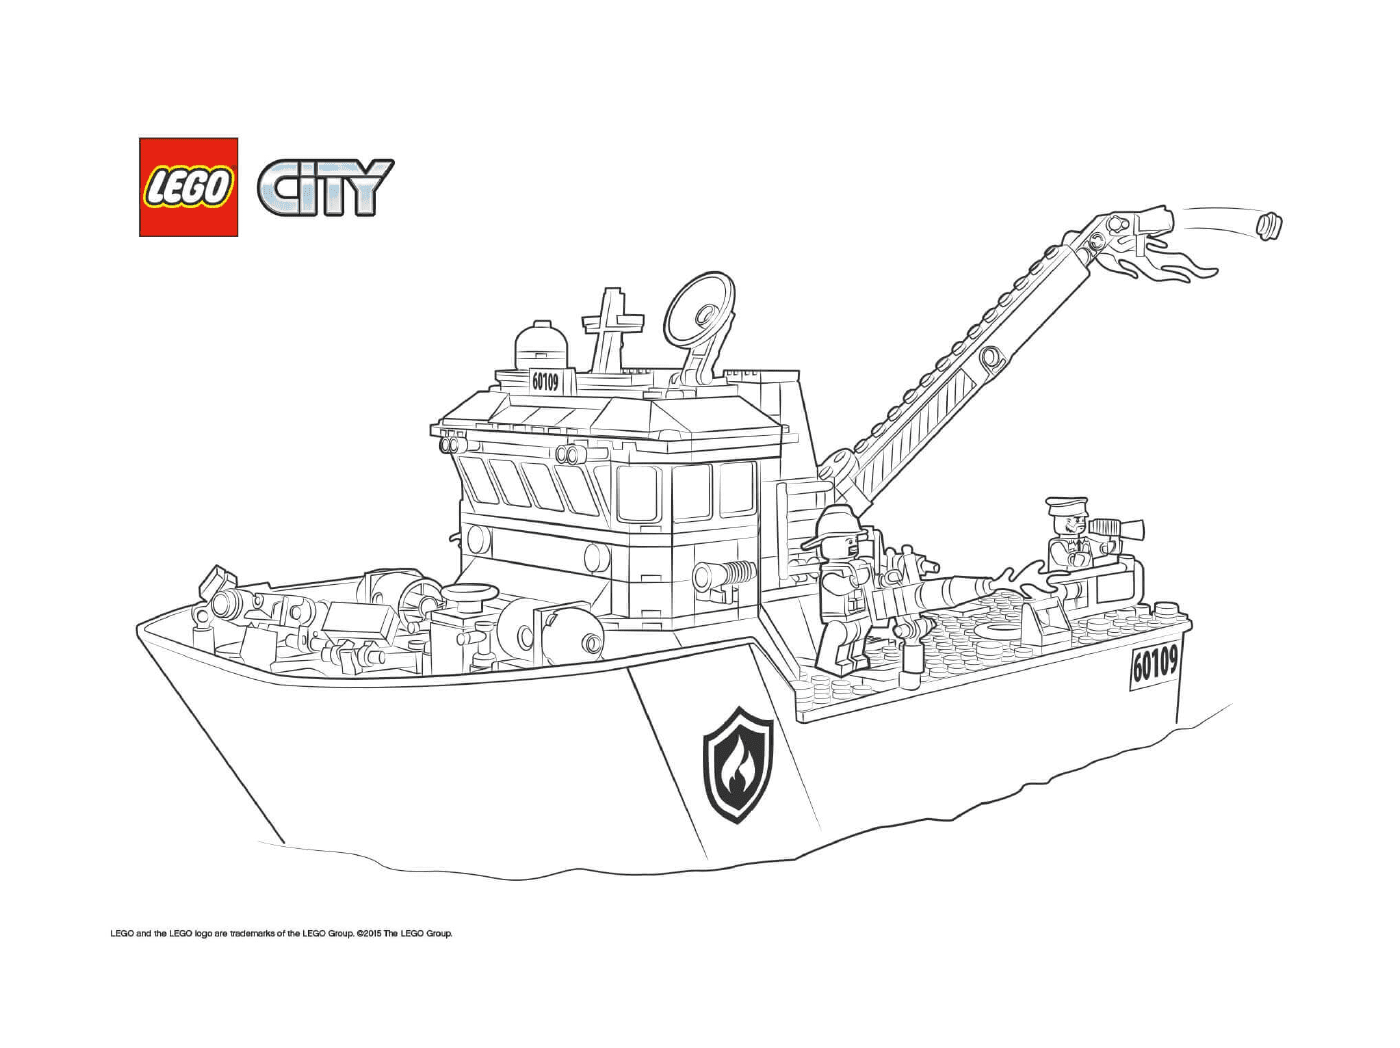  سفينة الإطفاء في مدينة ليغو (Lego City) 